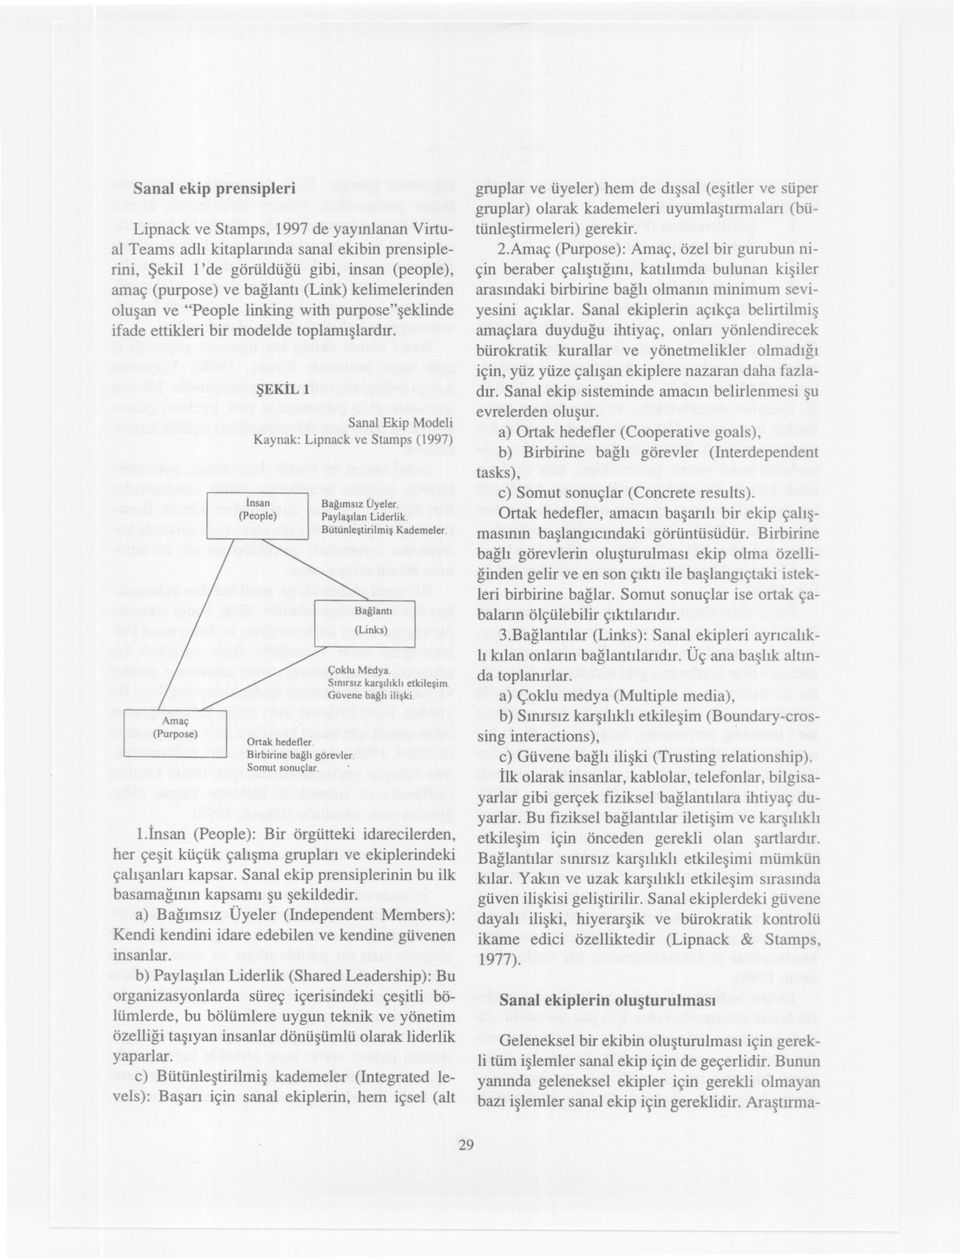 SEKIL 1 Sanal Ekip Modeli Kaynak: Lipnack ve Stamps (1997) Insan (People) Ortak hedefler. Birbirine bagli görevler. Somut sonuçlar. Bagimsiz Üyeler. Paylasilan Liderlik. Bütünlestiriimis Kademeler.